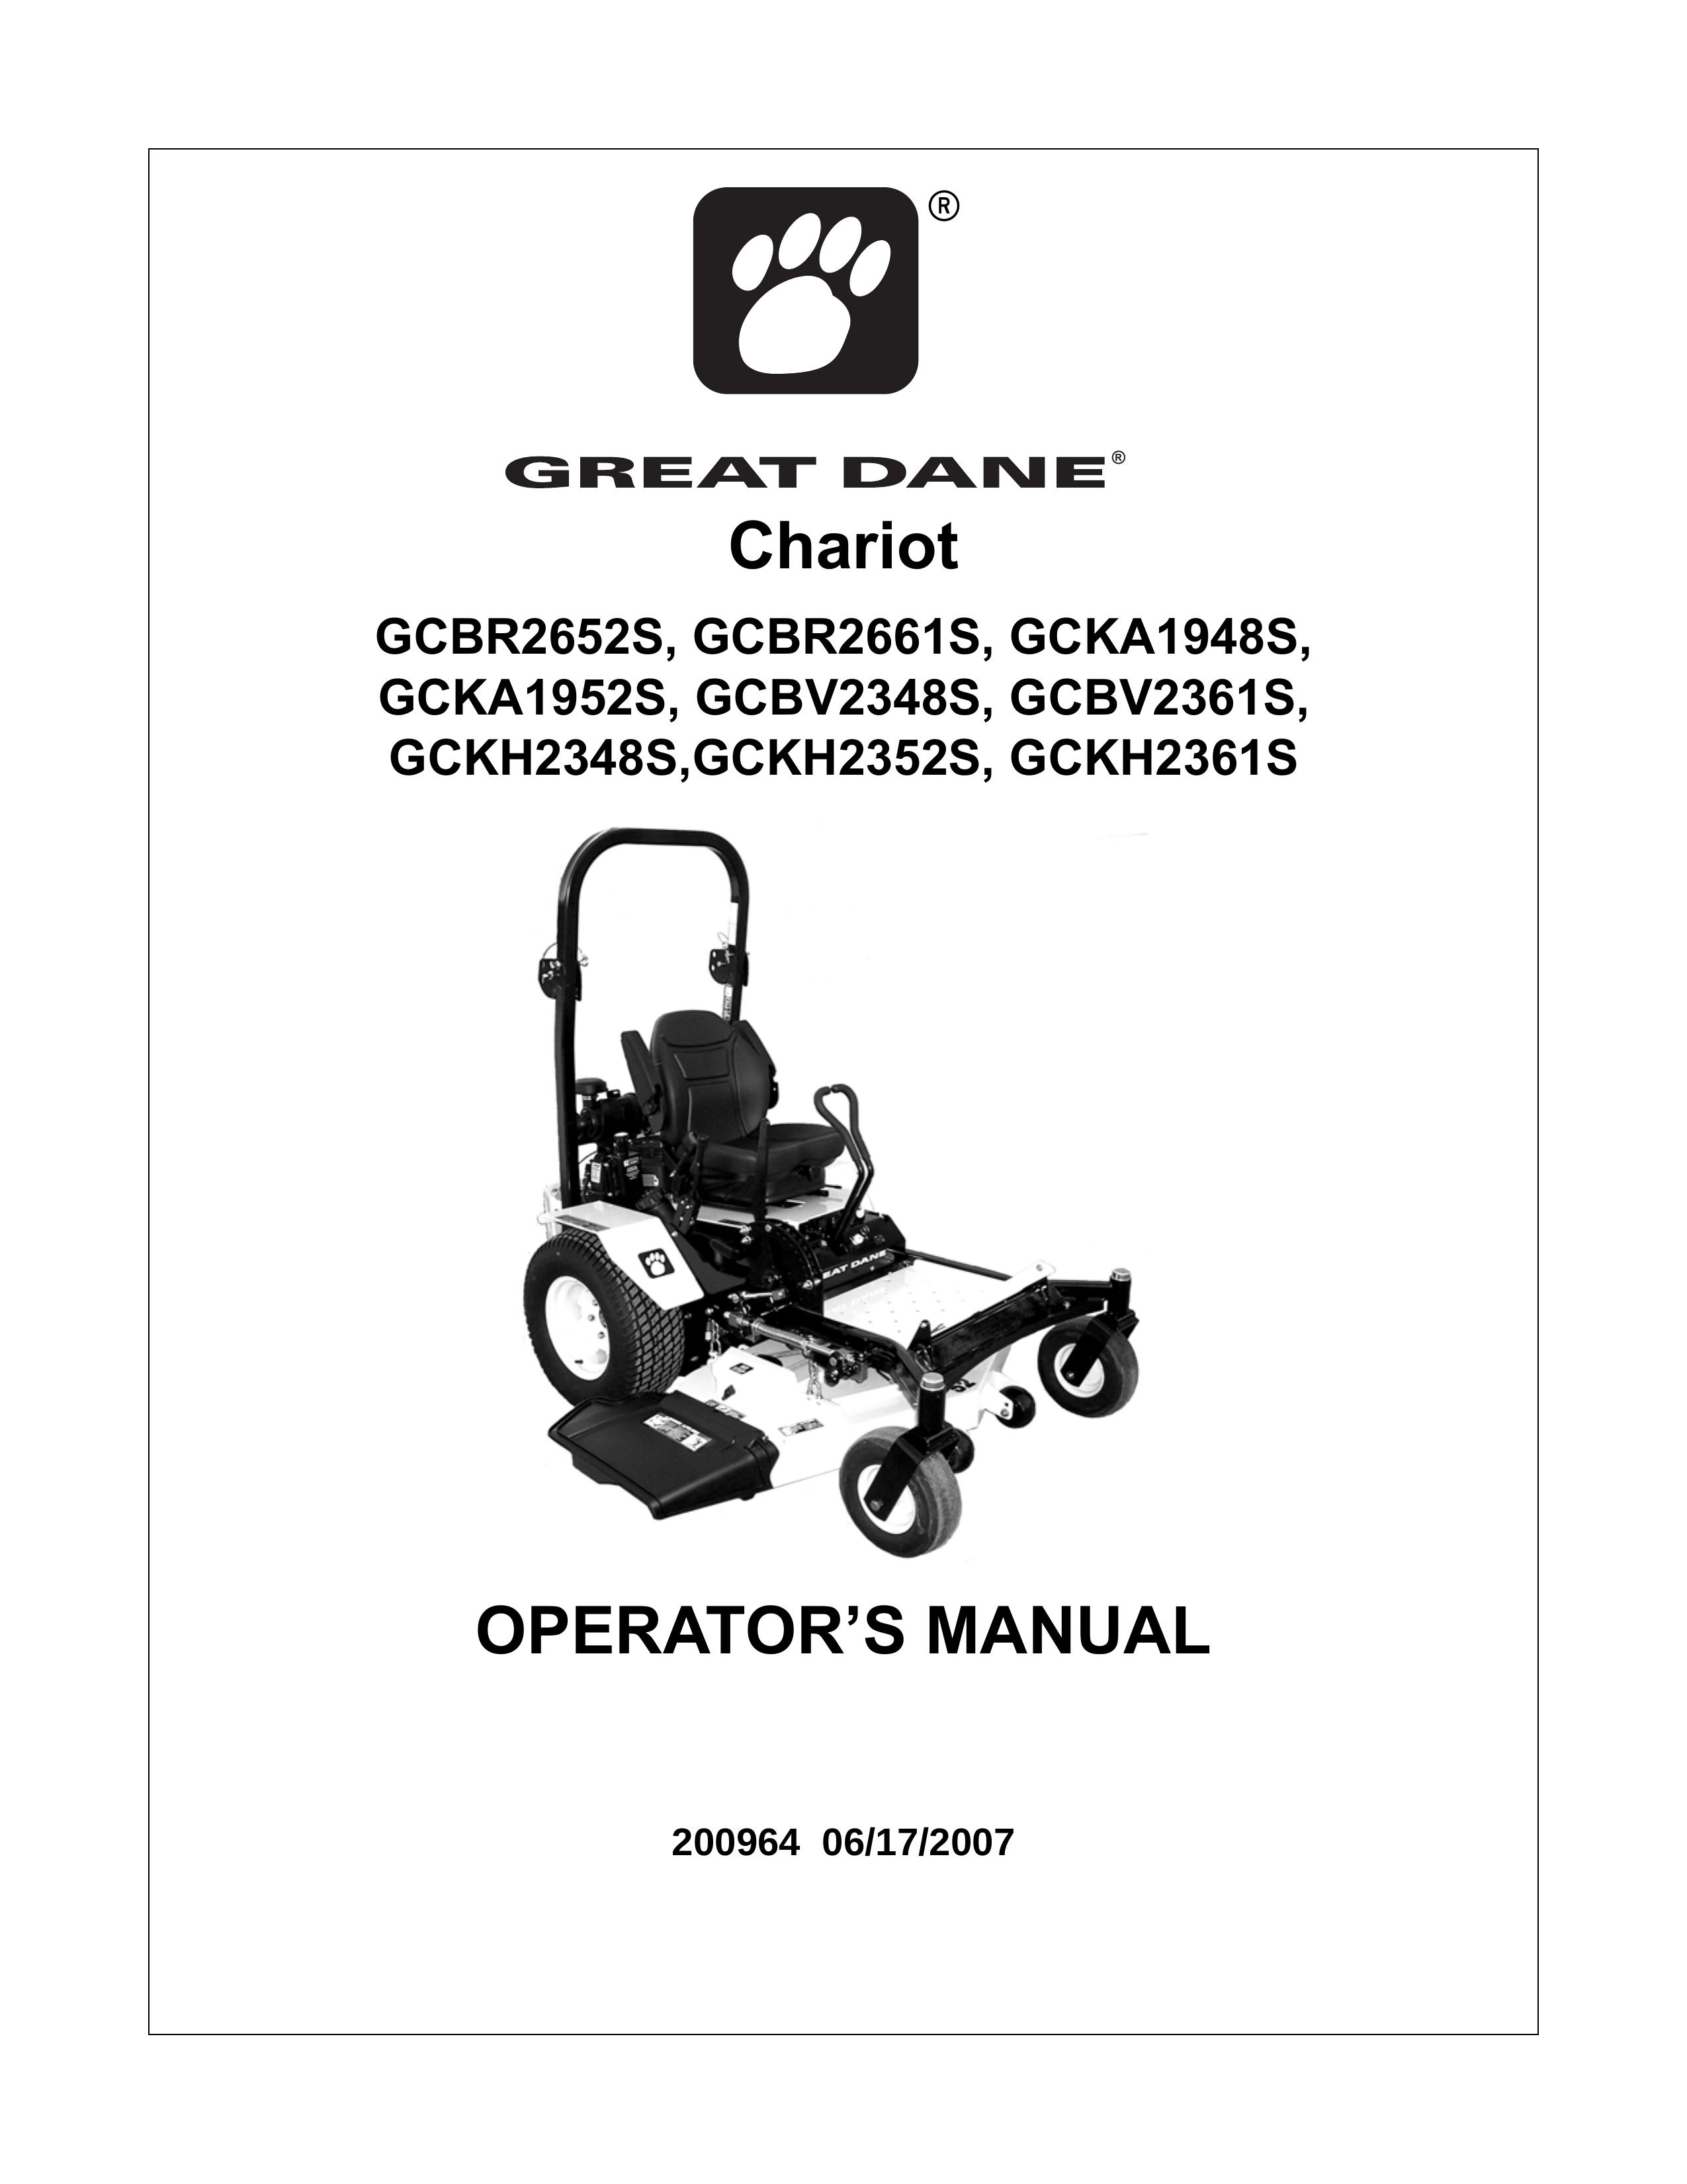 Great Dane GCKA1952S Lawn Mower User Manual